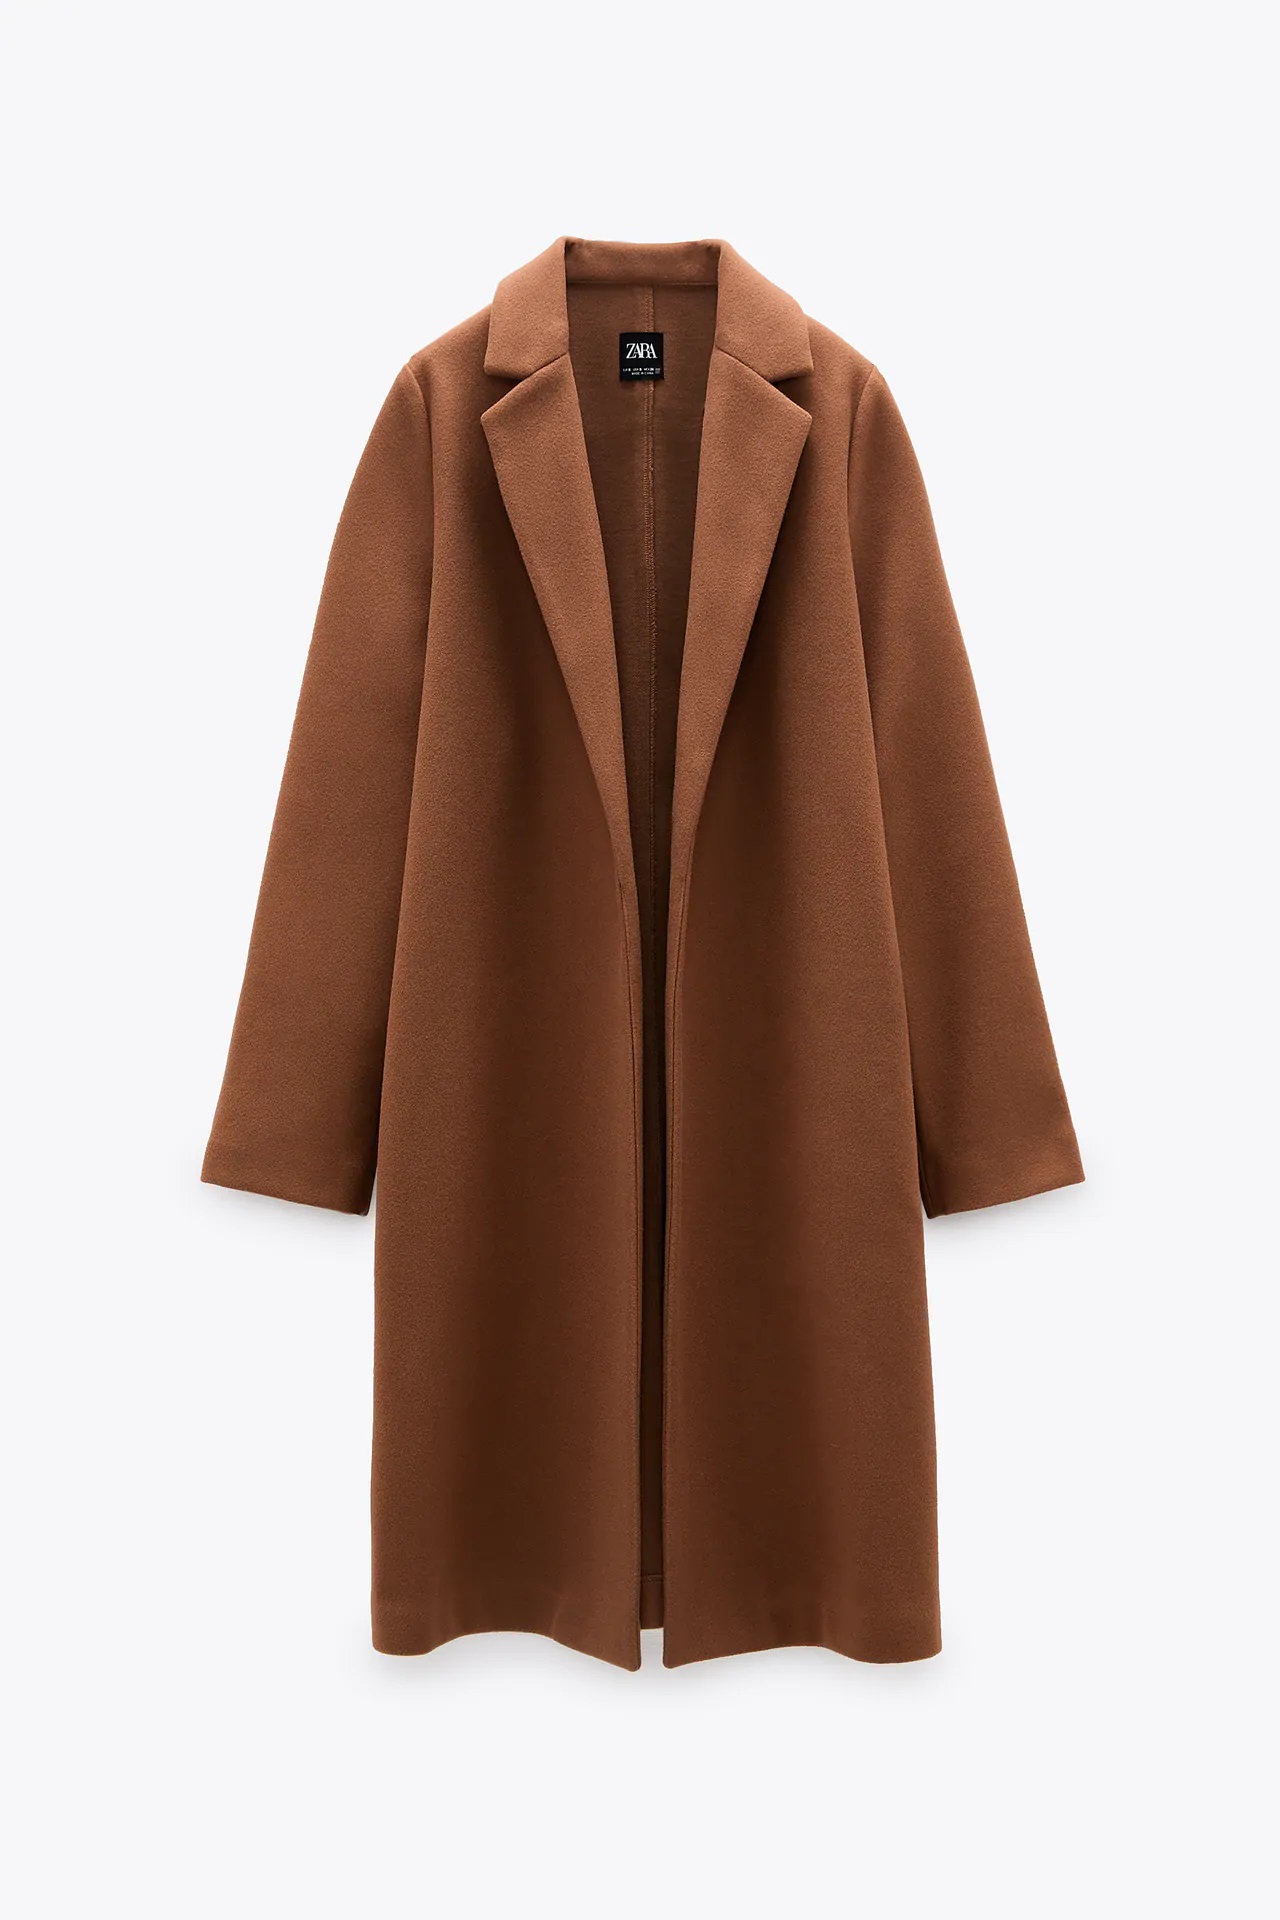 Zara tiene el abrigo low cost perfecto para los primeros días de frío a la venta por 29,99 euros